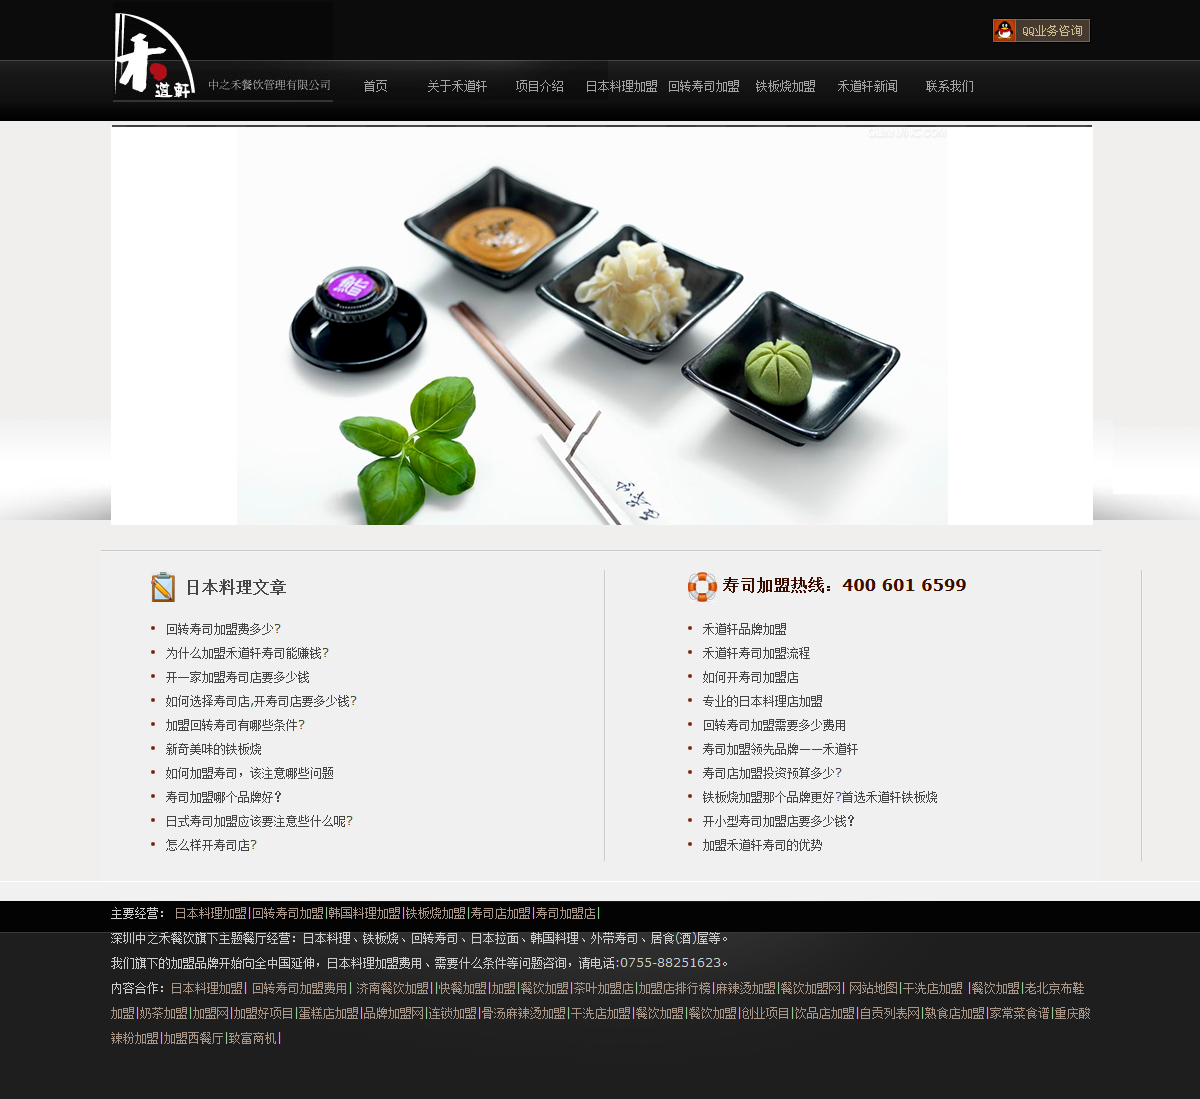 深圳市中之禾餐饮管理有限公司网站案例